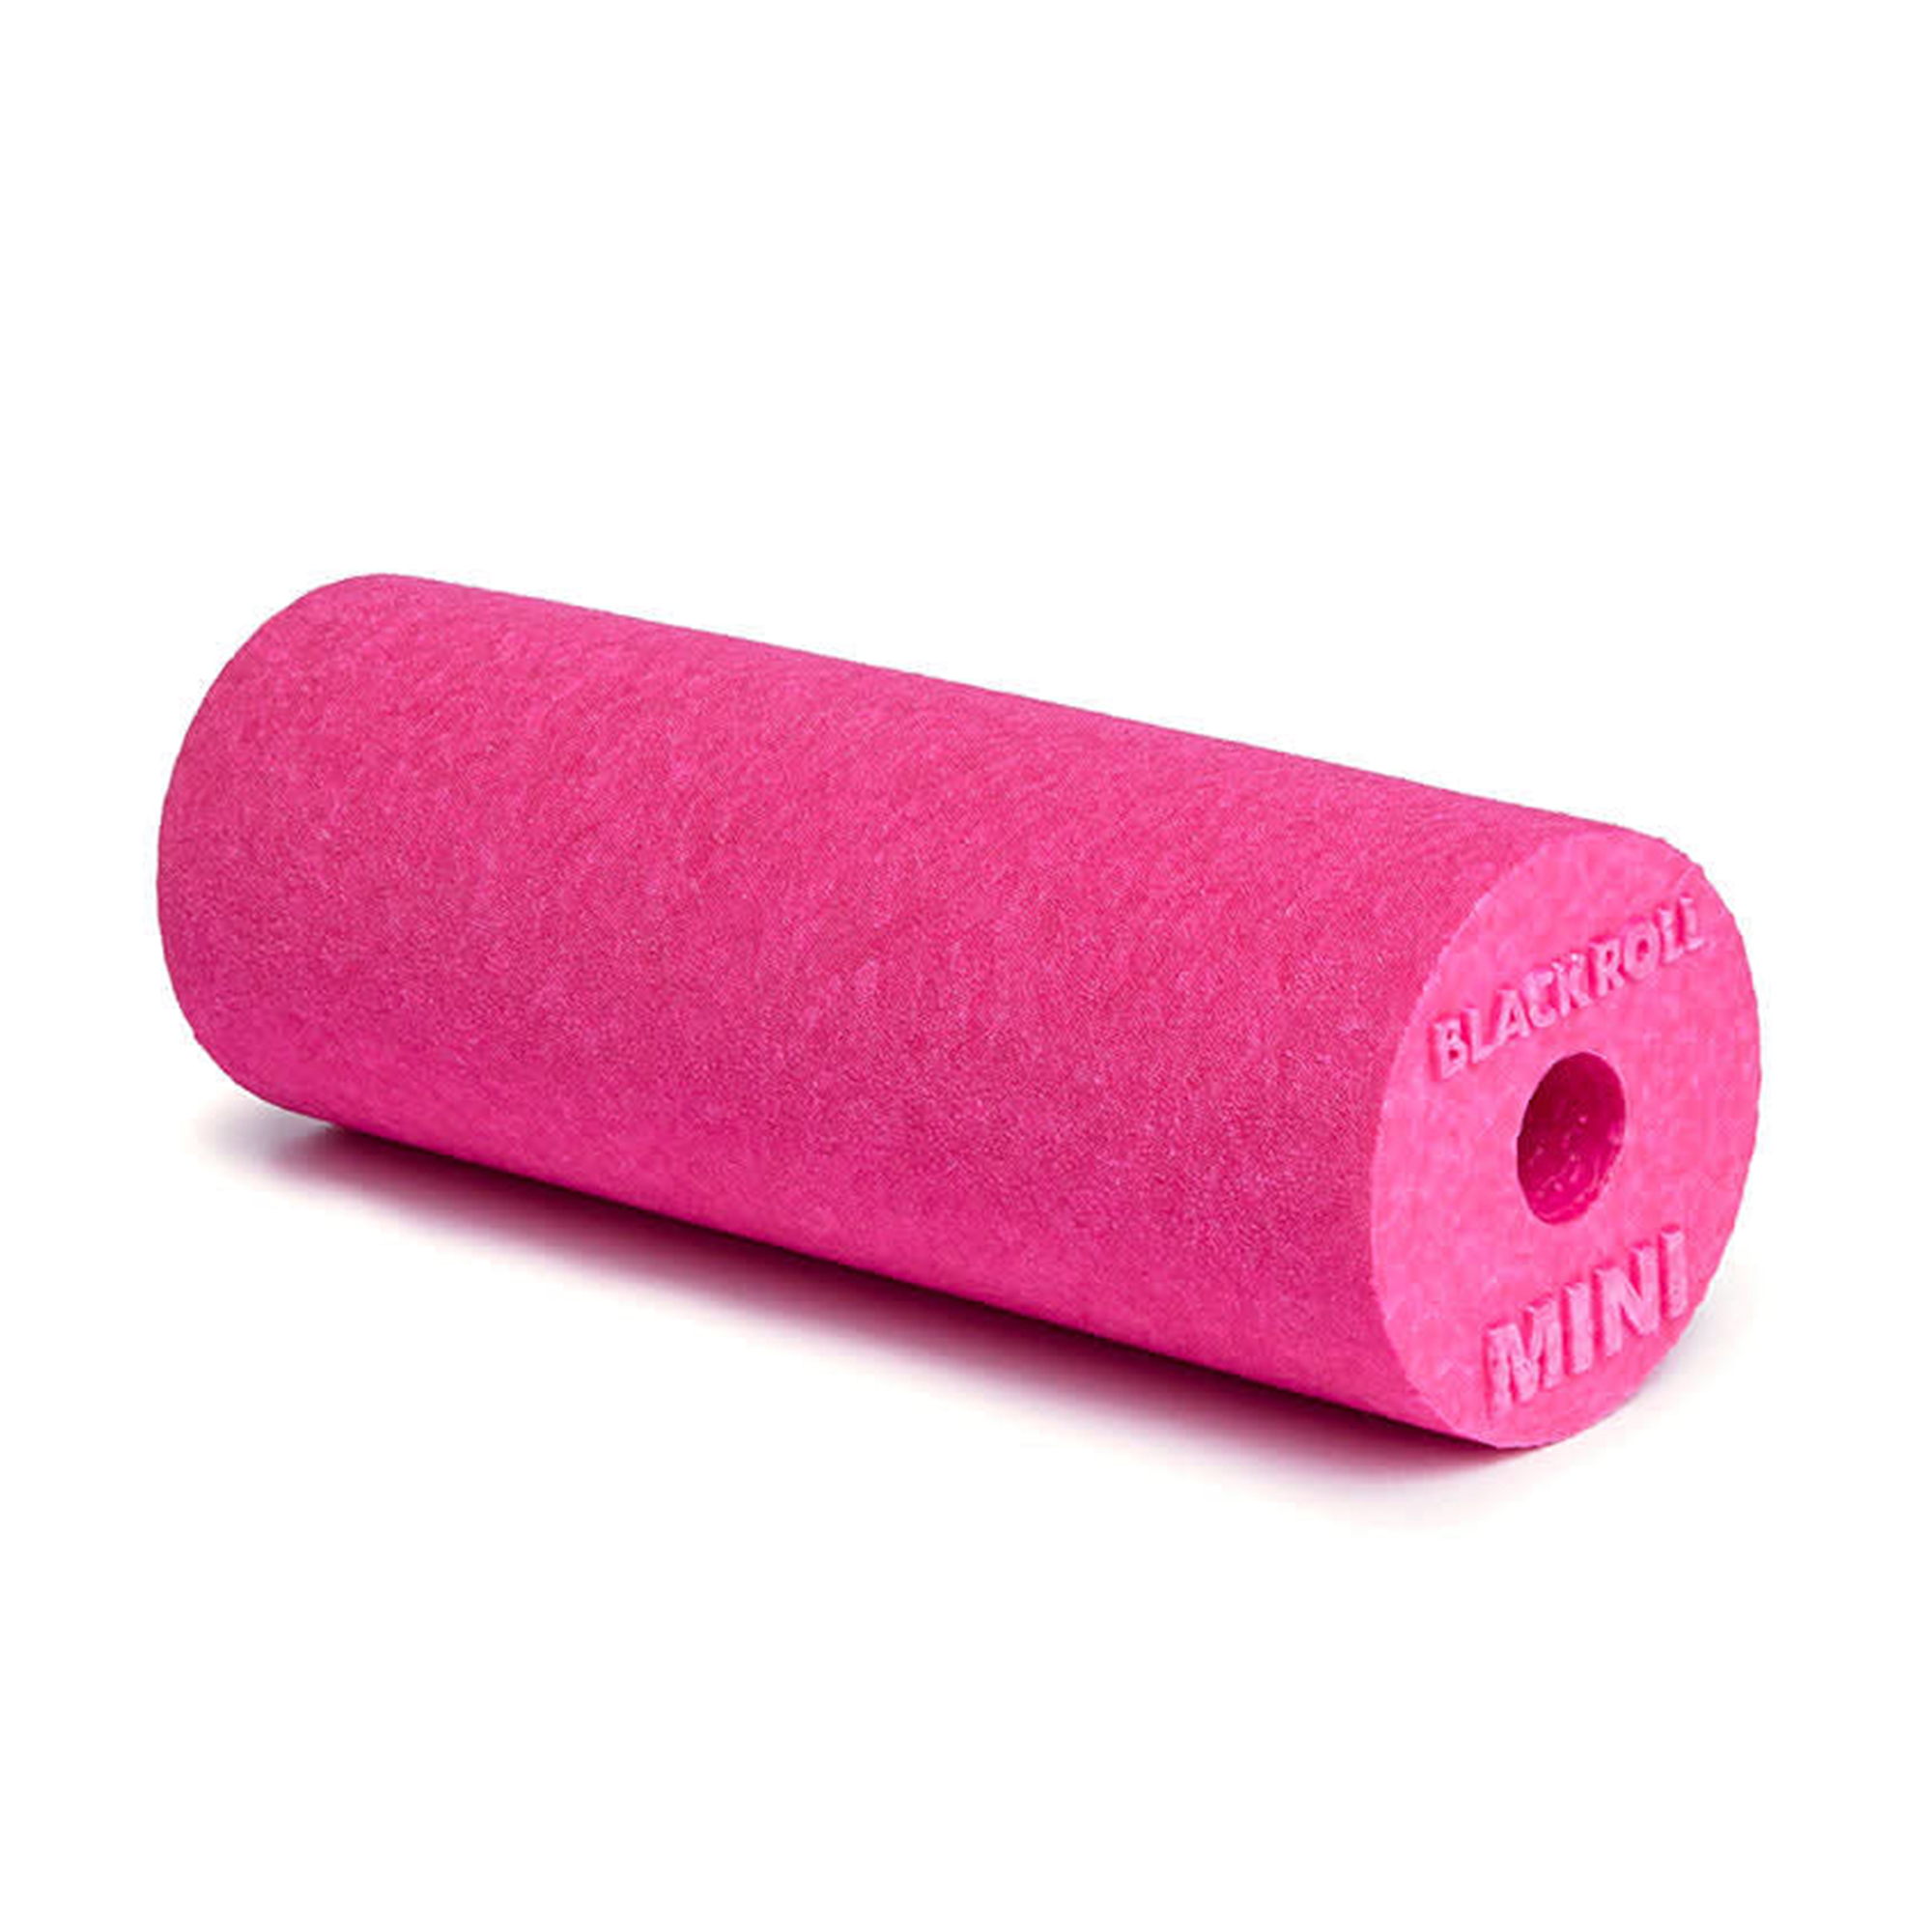 Blackroll Mini Flow Foam Roller - Pink (15 cm x 6 cm)